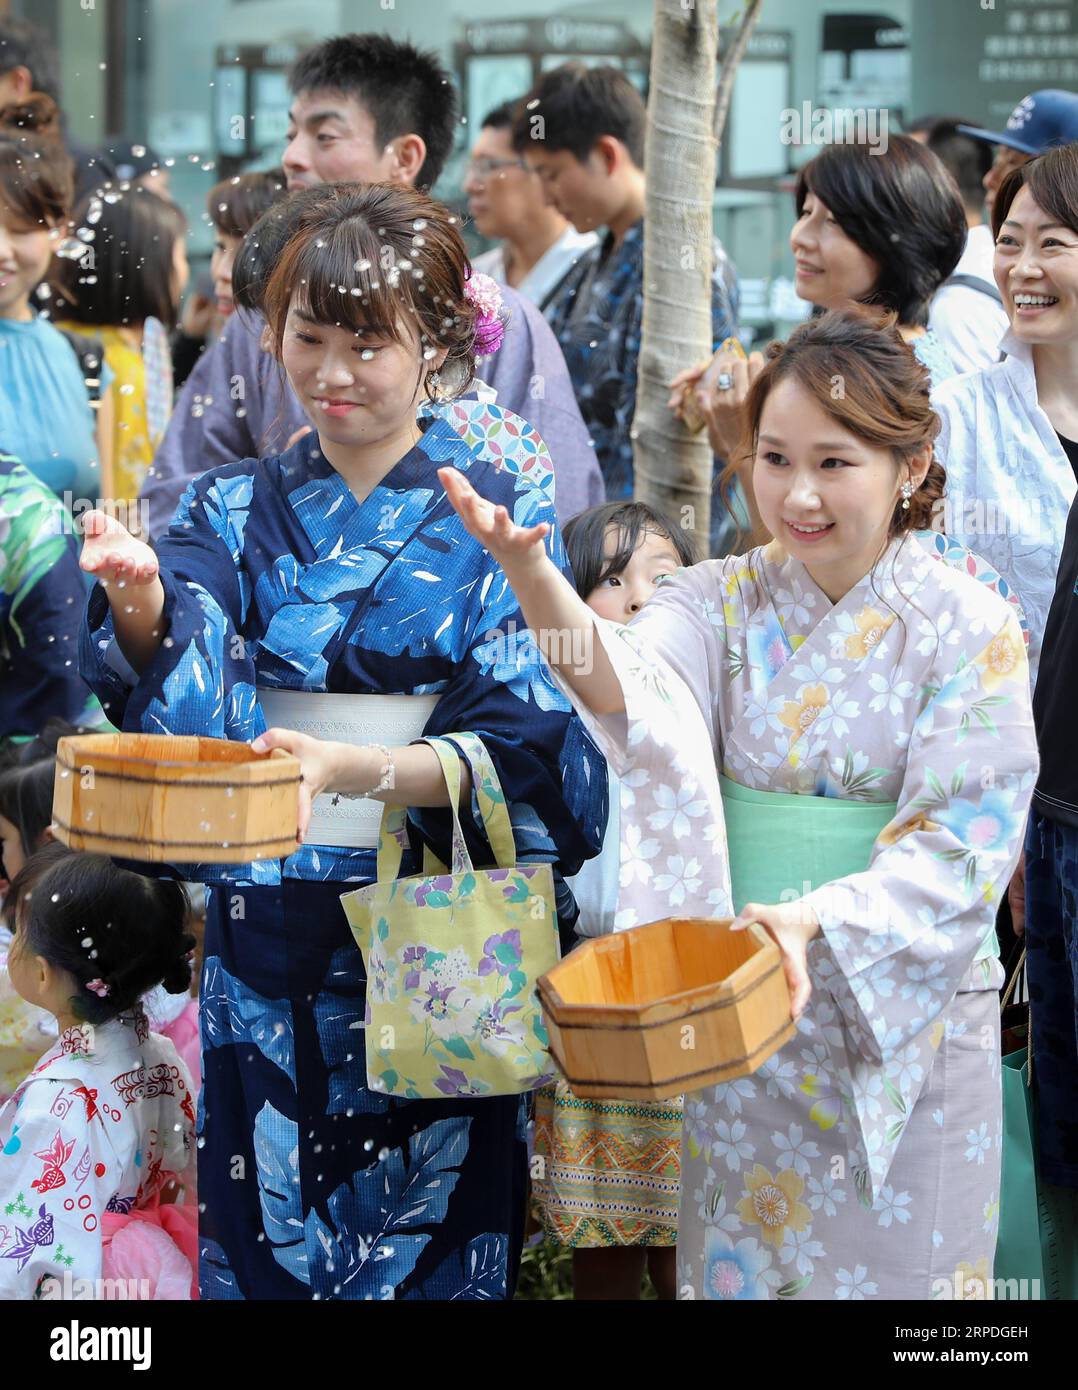 (190803) -- TOKYO, 3 août 2019 -- deux femmes en costumes traditionnels éclaboussent de l'eau lors de l'événement d'arrosage Uchimizu à Tokyo, Japon, le 3 août 2019. Uchimizu est une tradition estivale destinée à refroidir l'air pendant que l'eau s'évapore.) JAPON-TOKYO-ÉTÉ-UCHIMIZU-SPLASH EAU DUXXIAOYI PUBLICATIONXNOTXINXCHN Banque D'Images